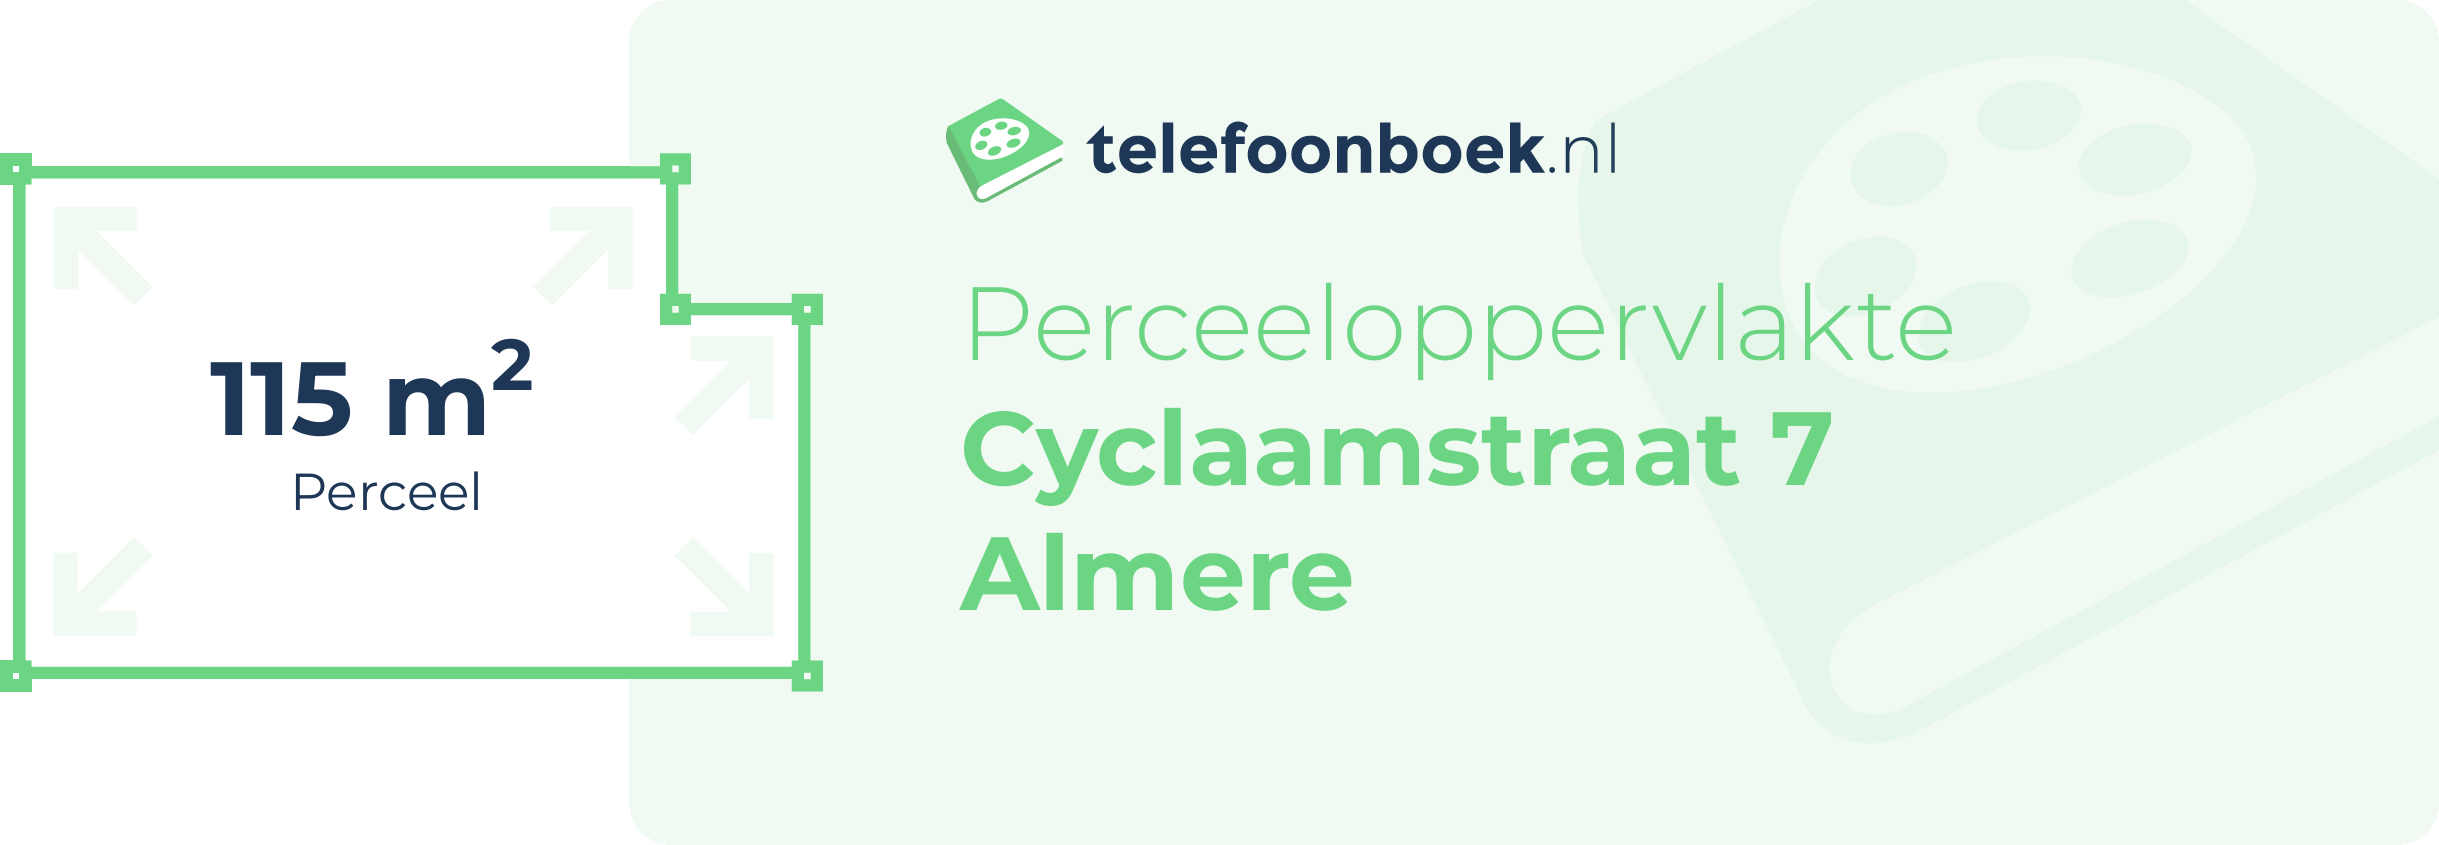 Perceeloppervlakte Cyclaamstraat 7 Almere